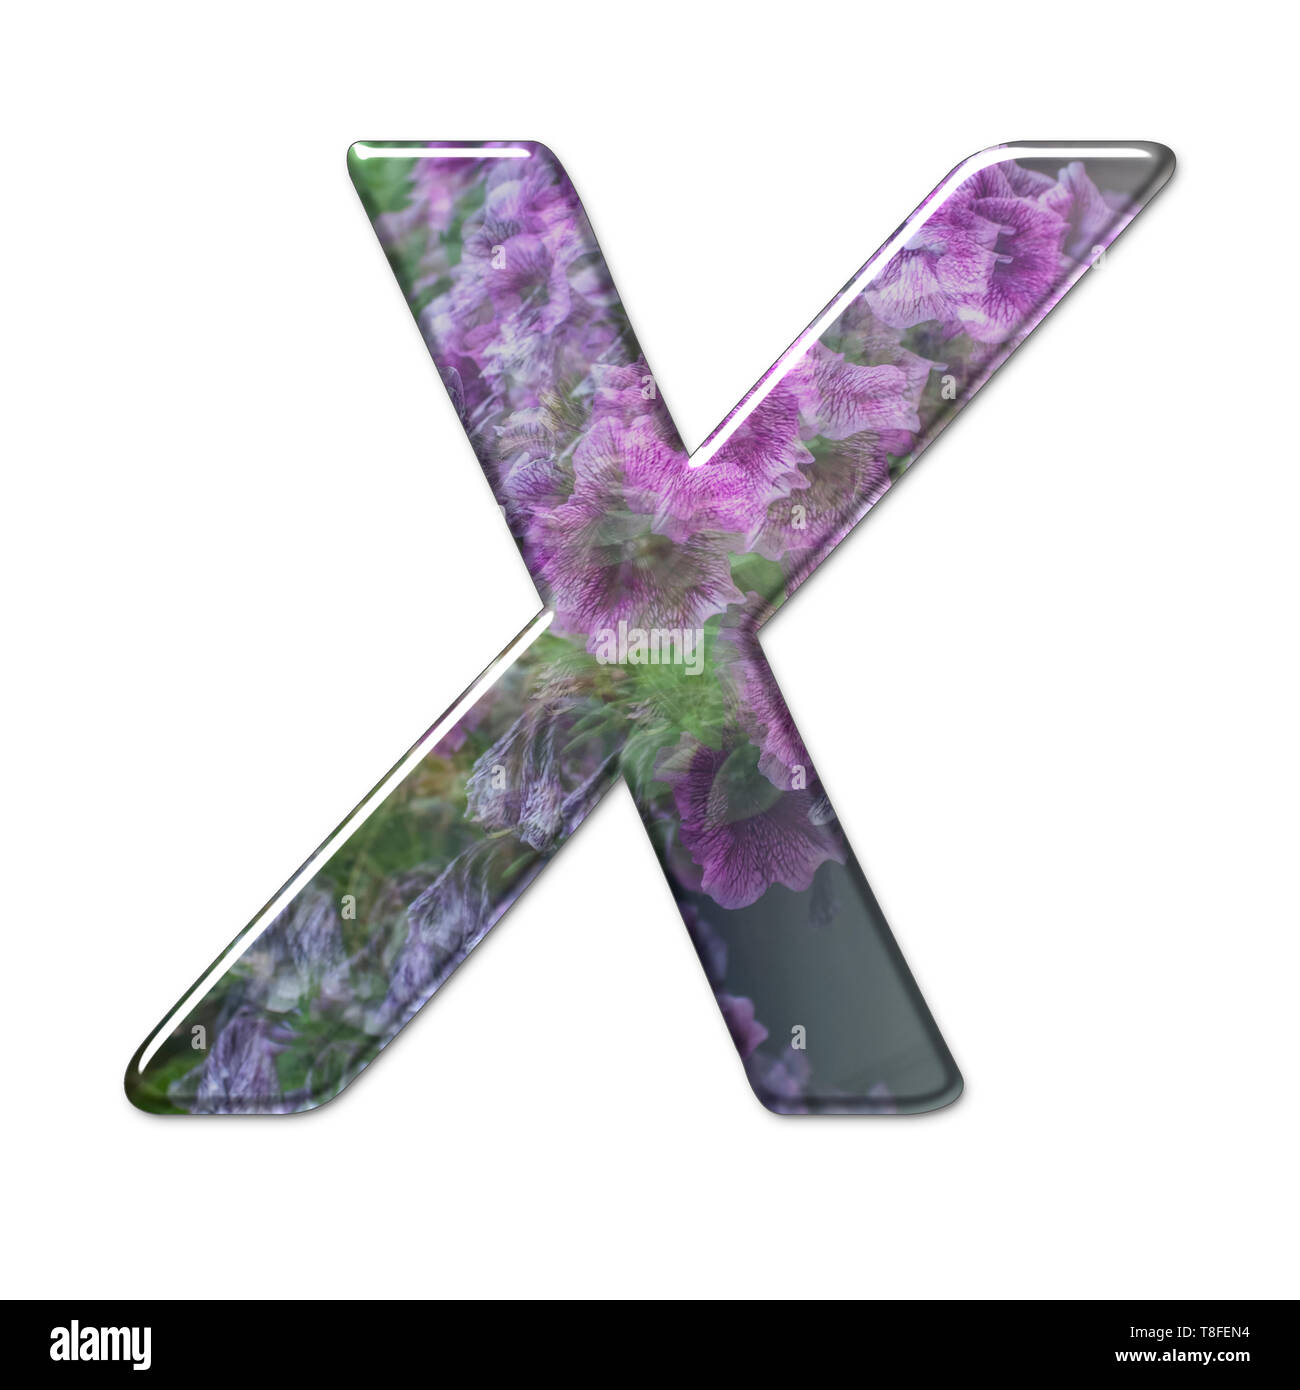 Il Campidoglio lettera X è parte di un insieme di lettere, numeri e simboli di 3D alfabeto realizzato con una immagine floreale su sfondo bianco Foto Stock